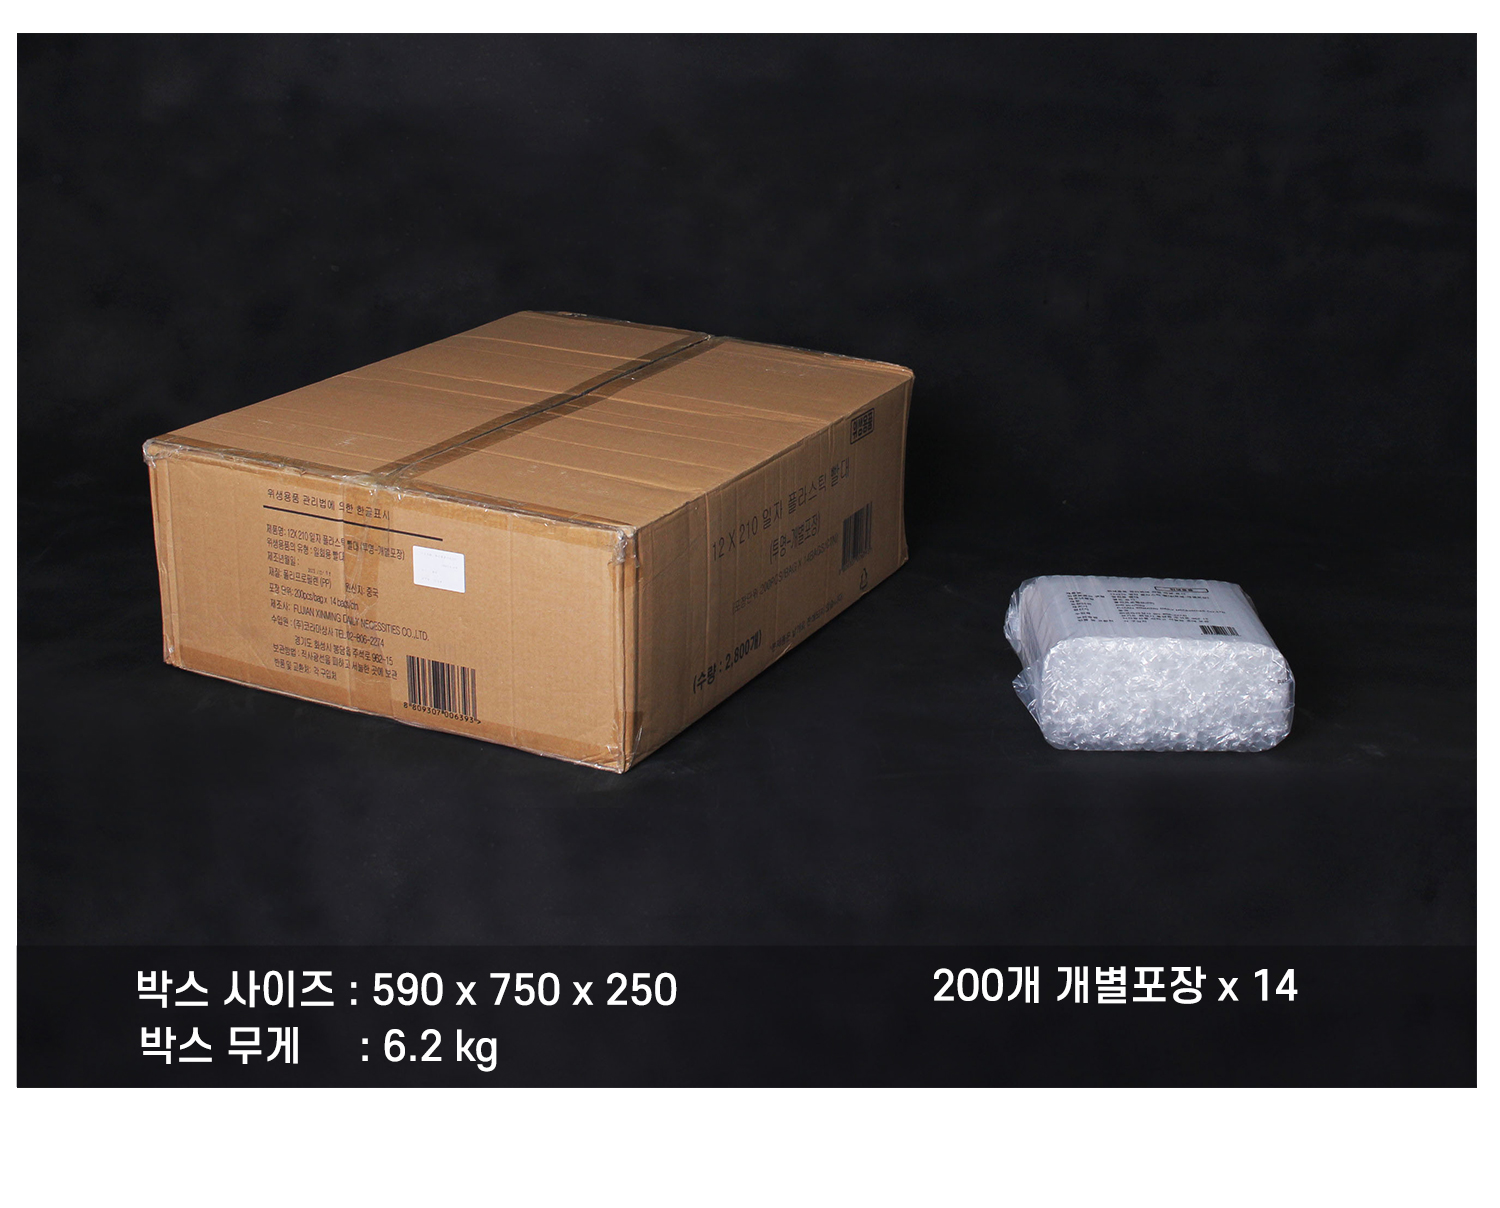 플라스틱버블티빨대의 배송 박스 정보와 박스 내 소포장 단위의 묶음을 보여주는 이미지